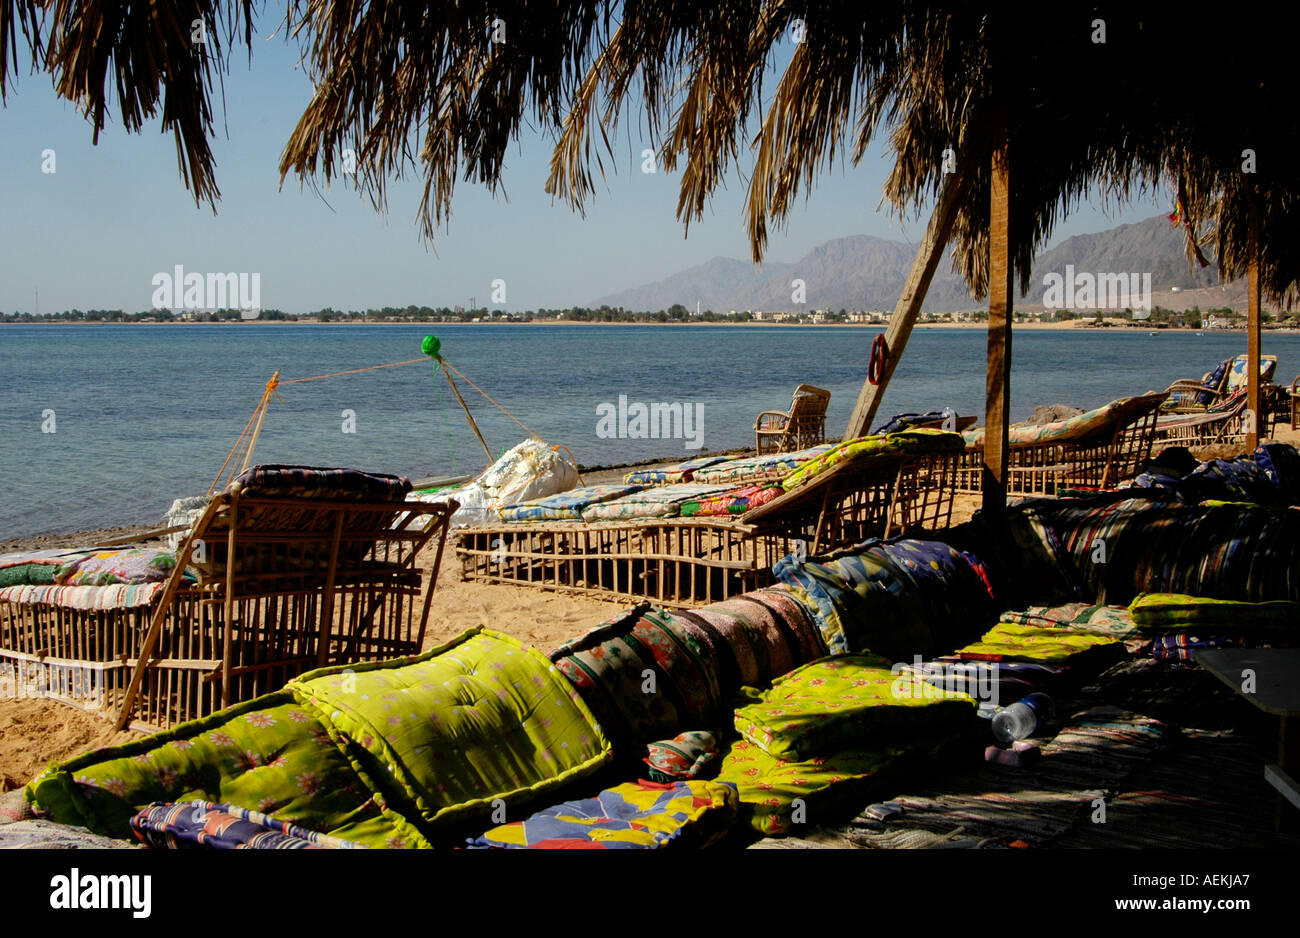 Vue sur la plage de Nuweiba Tarabina à Nuweiba également orthographié: Nueiba une ville côtière dans la partie orientale de la péninsule du Sinaï, Egypte Banque D'Images